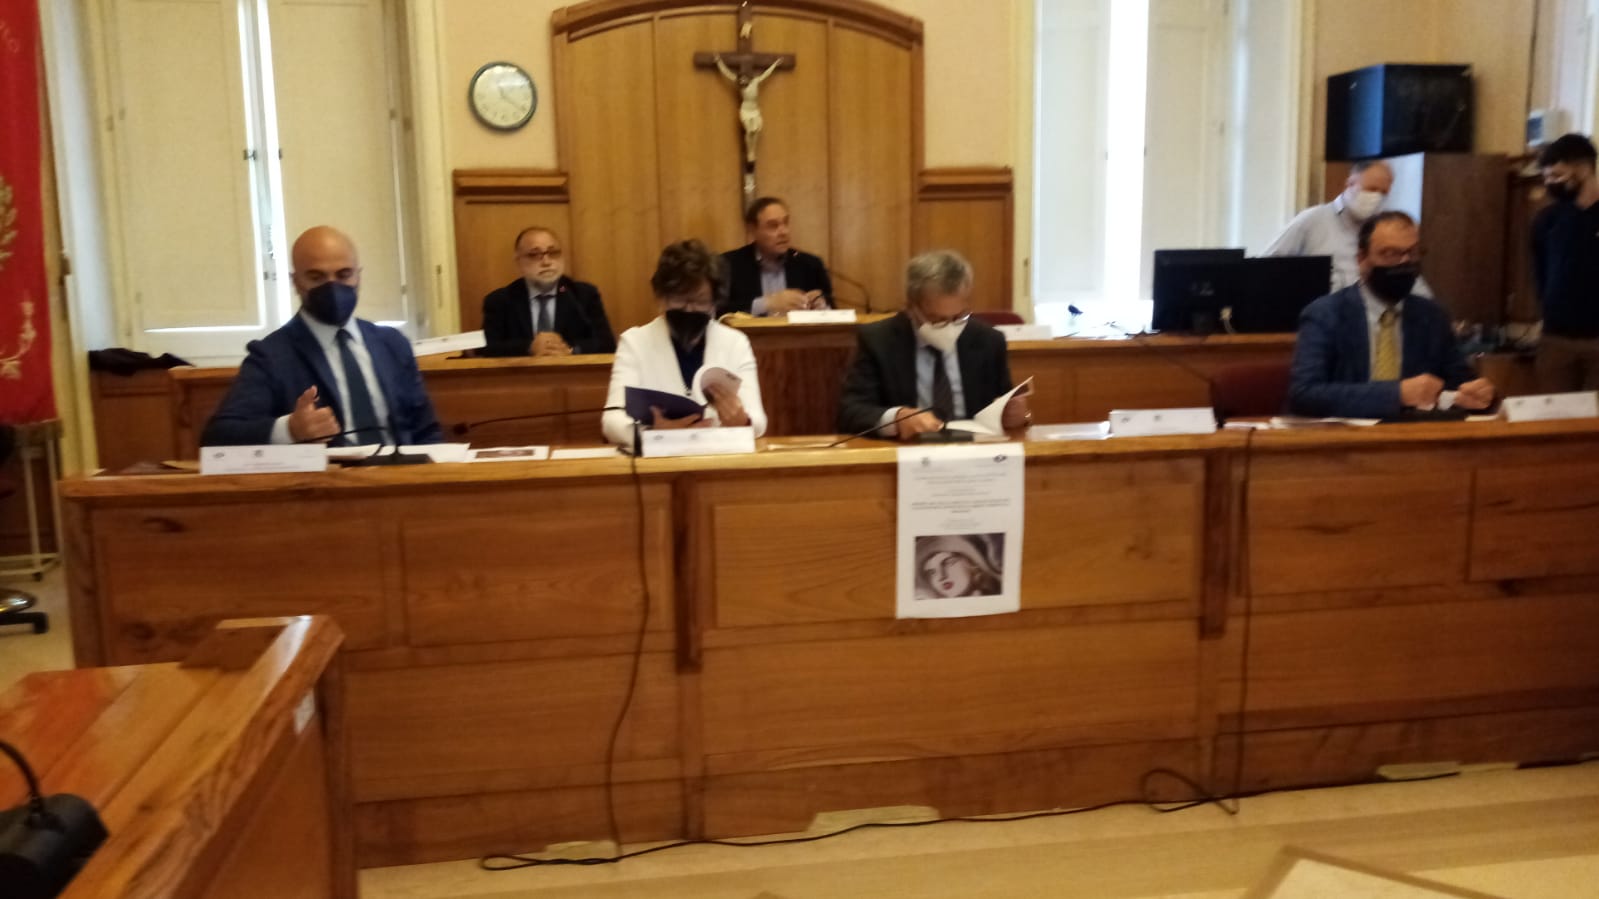 Benevento|Report 2020, Ciambriello: il Covid ha triplicato le criticita’ nelle carceri